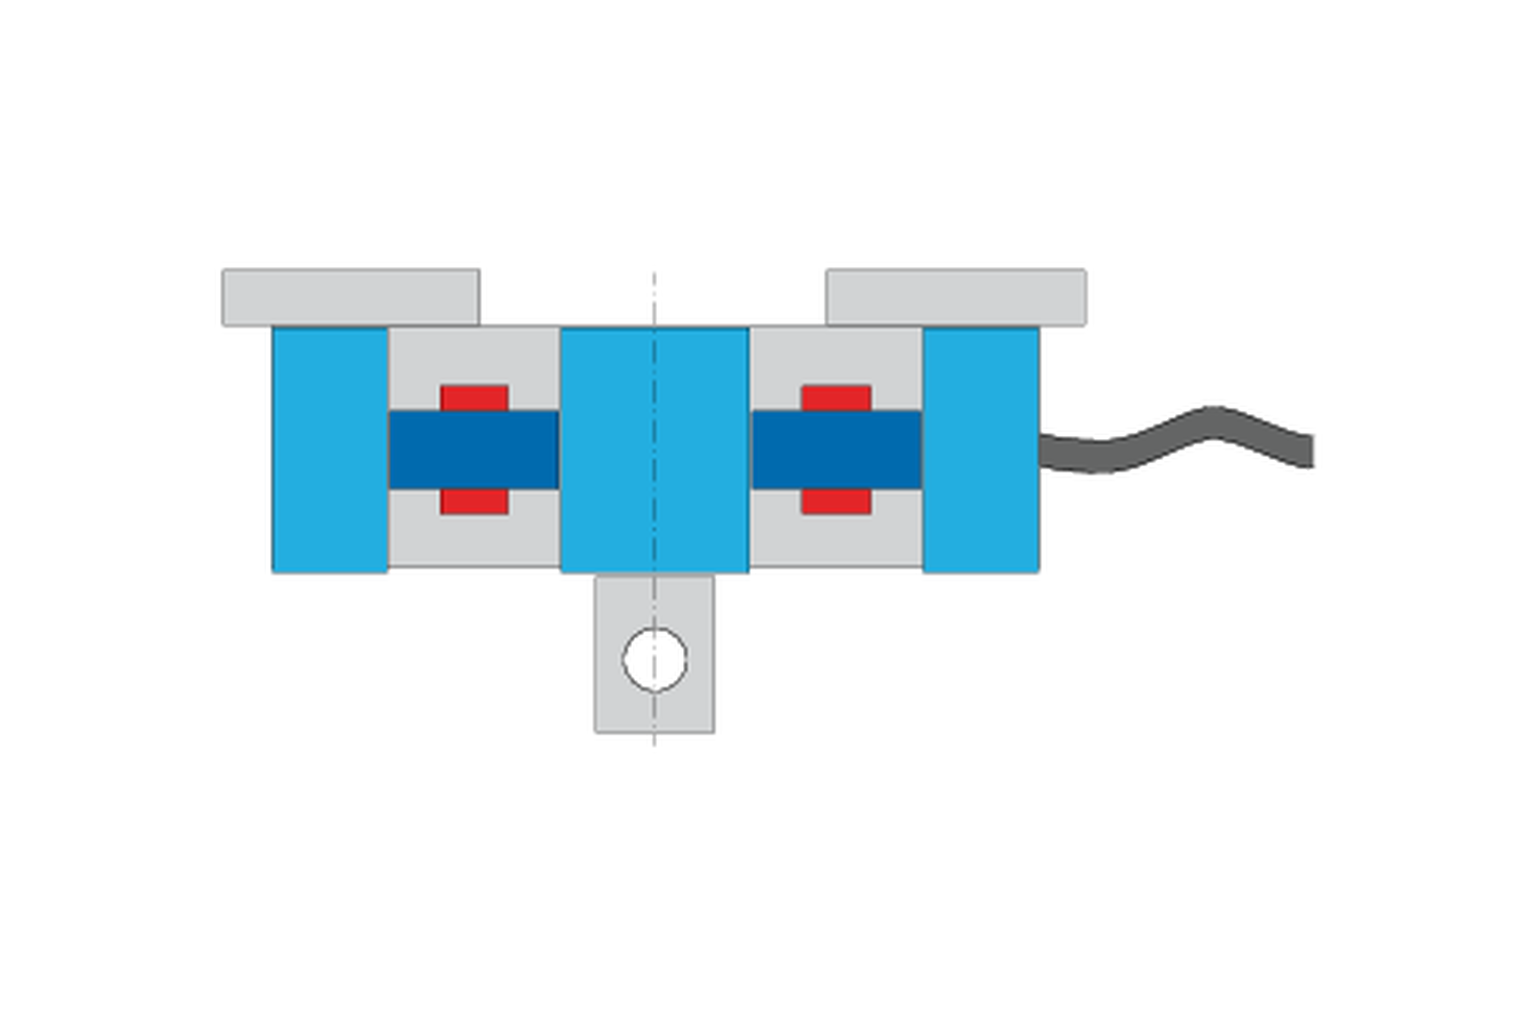 Bagaimana cara kerja load cell? Ilustrasi Load cell dengan pengukur regangan tanpa beban